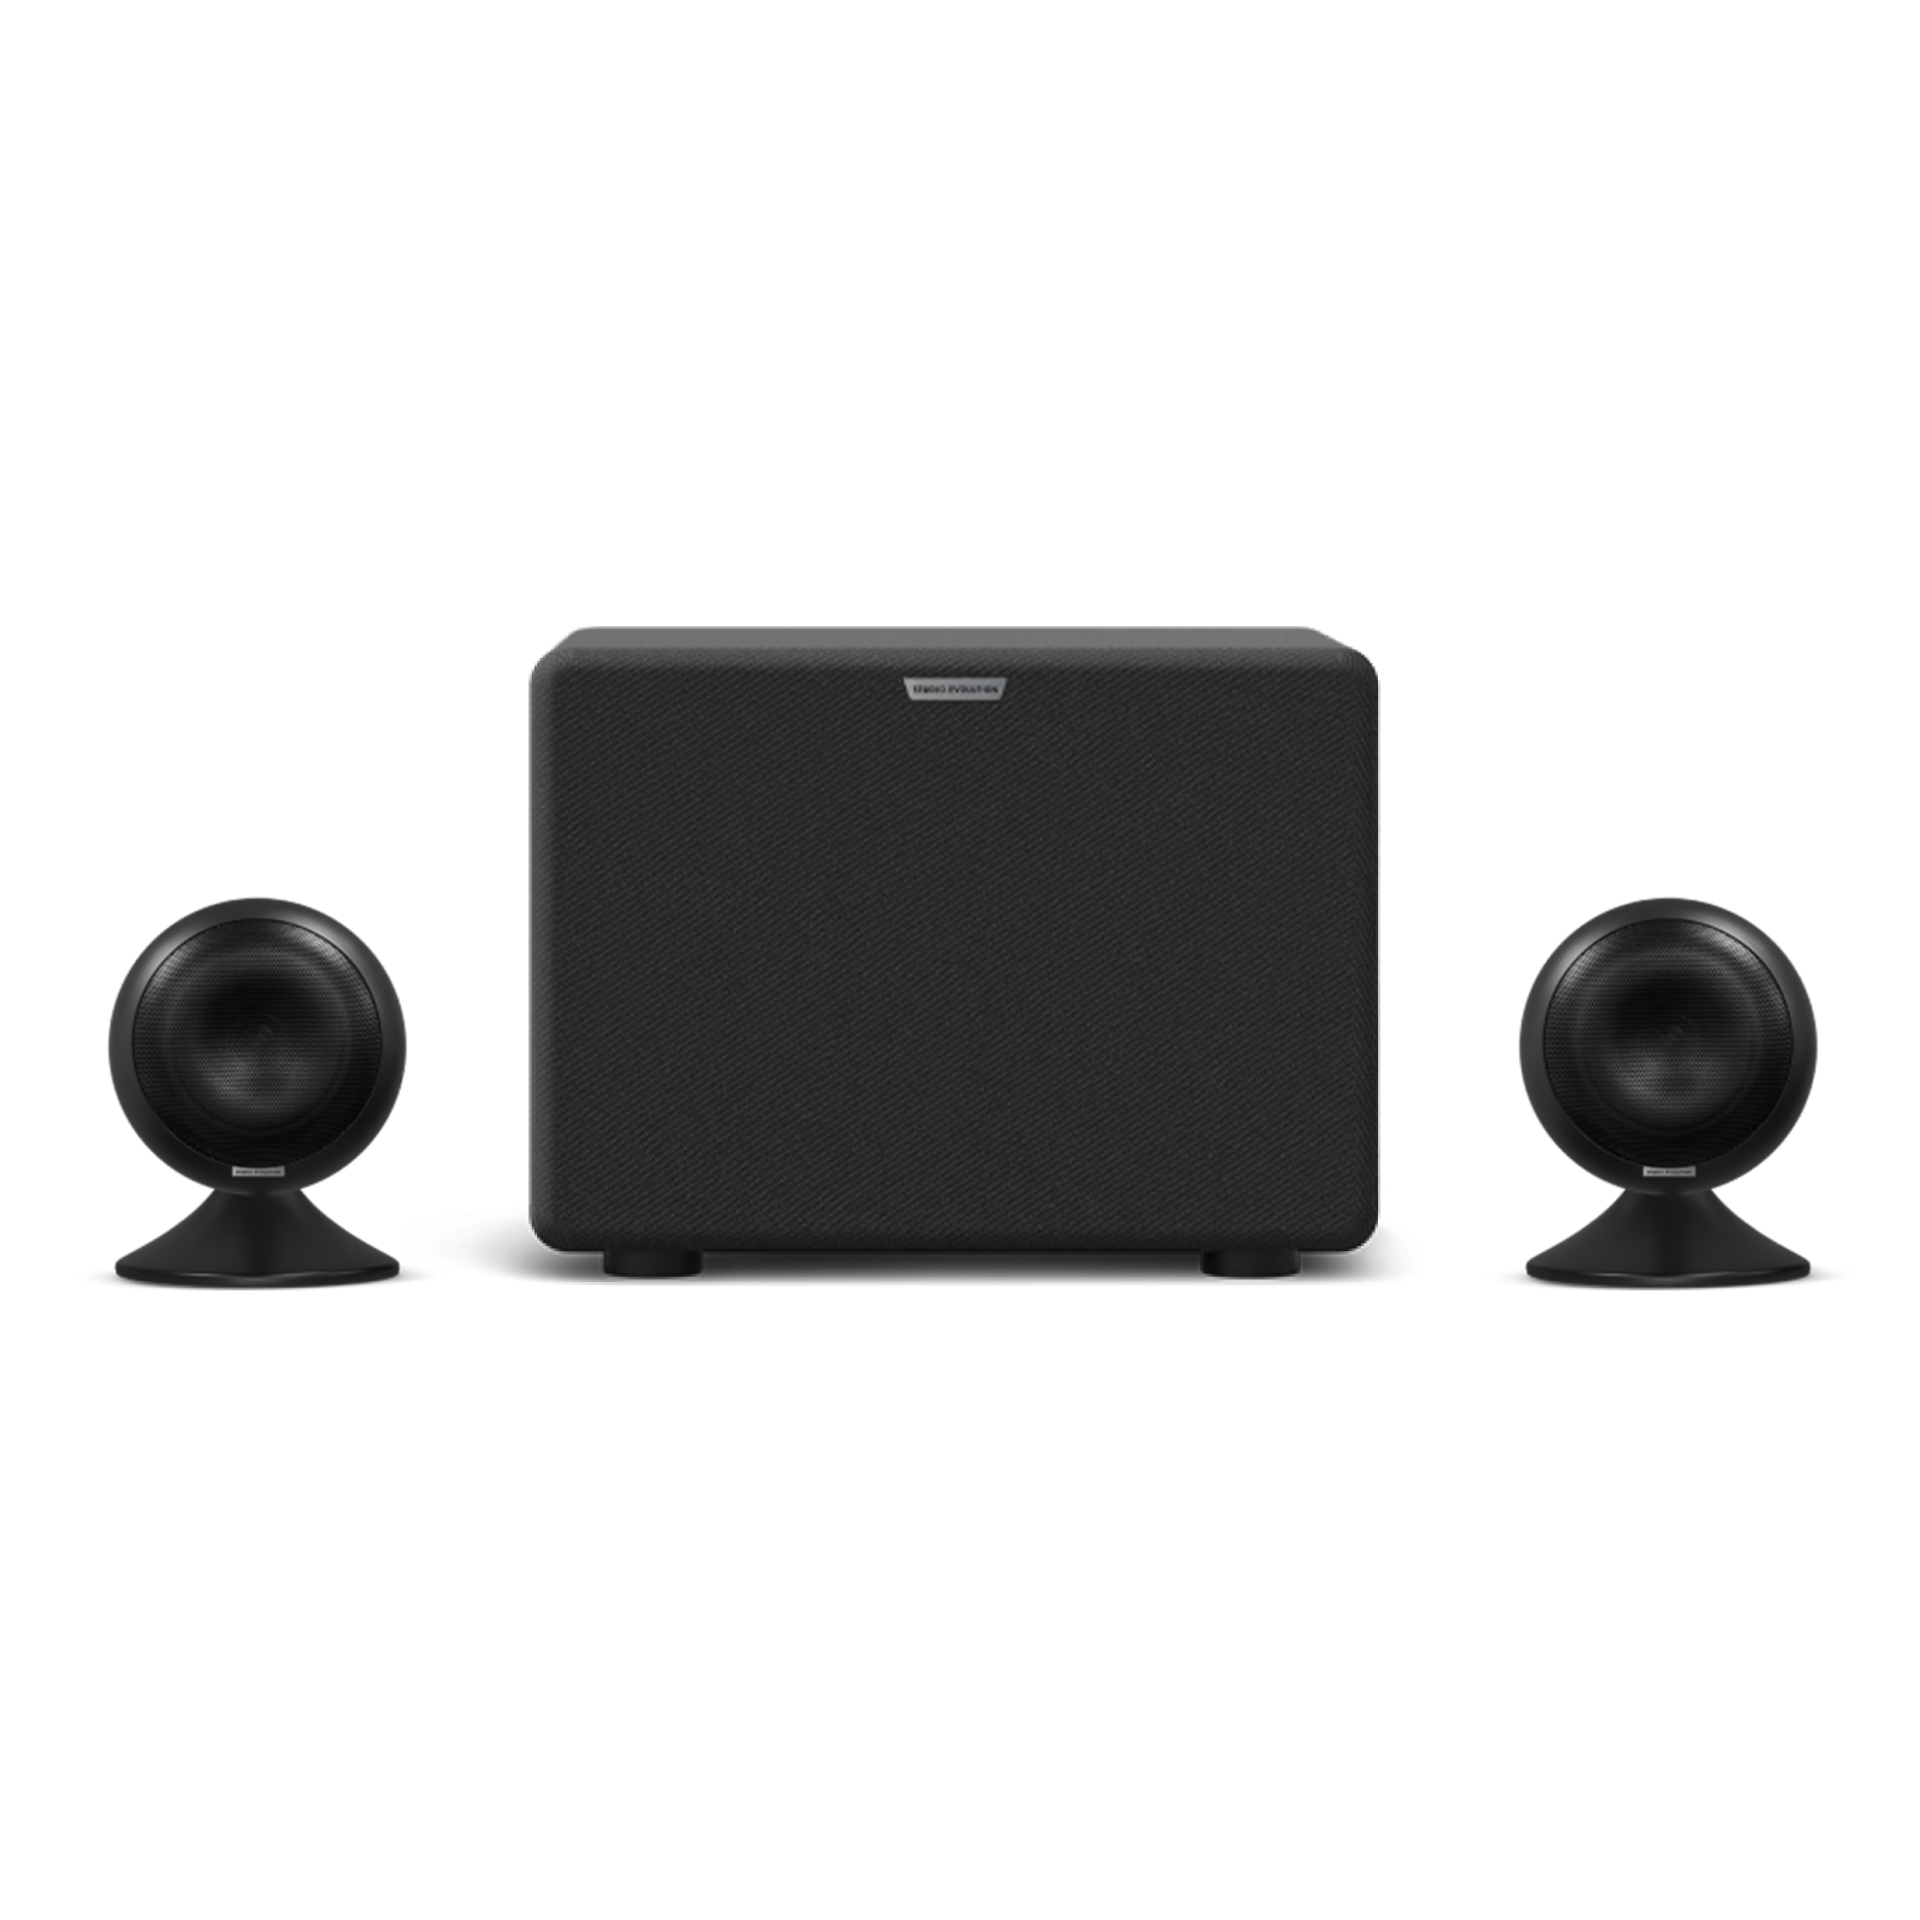 Караоке-комплект EVOBOX Black с микрофонами SE 200D и стереосистемой EvoSound Sphere 21 Black